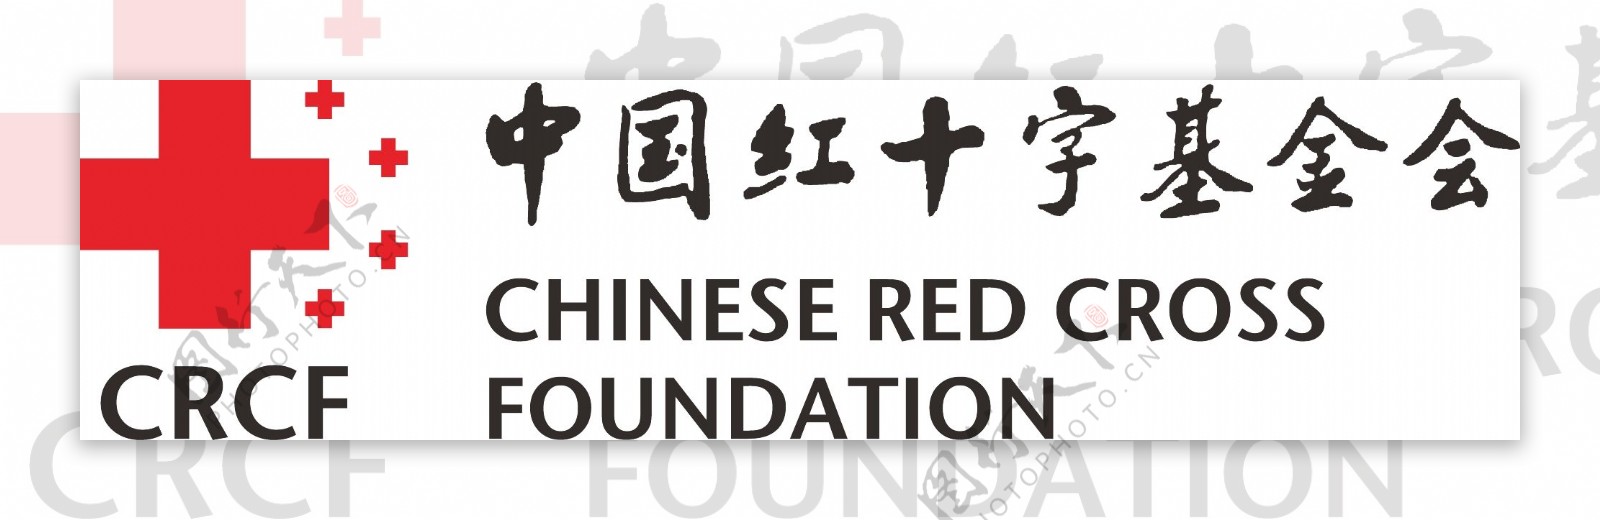 中国红十字基金会标志图片